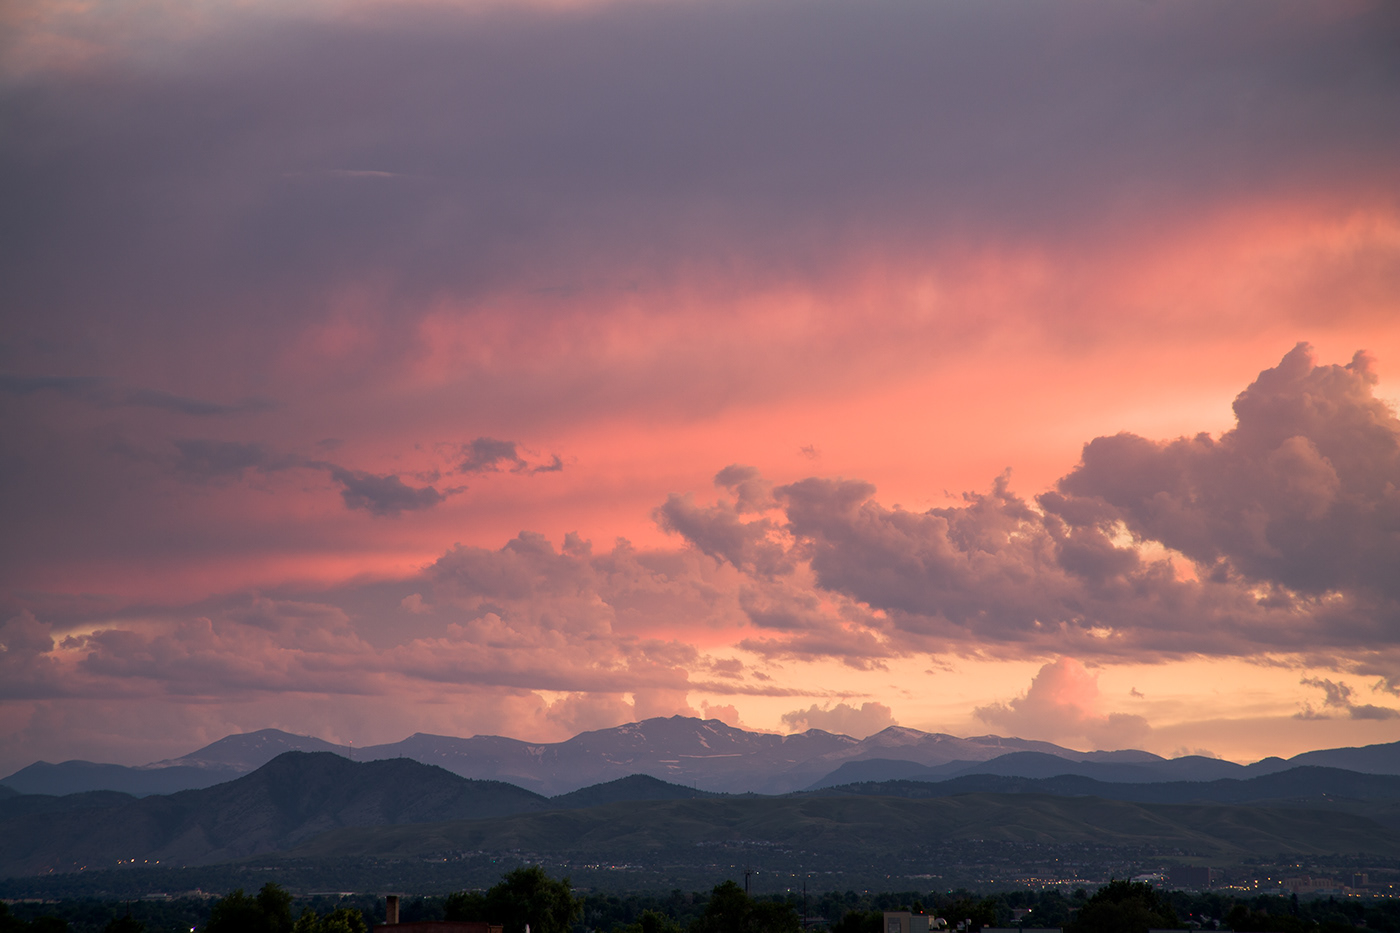 landscapes mt evans denver Colorado mountains Photography 